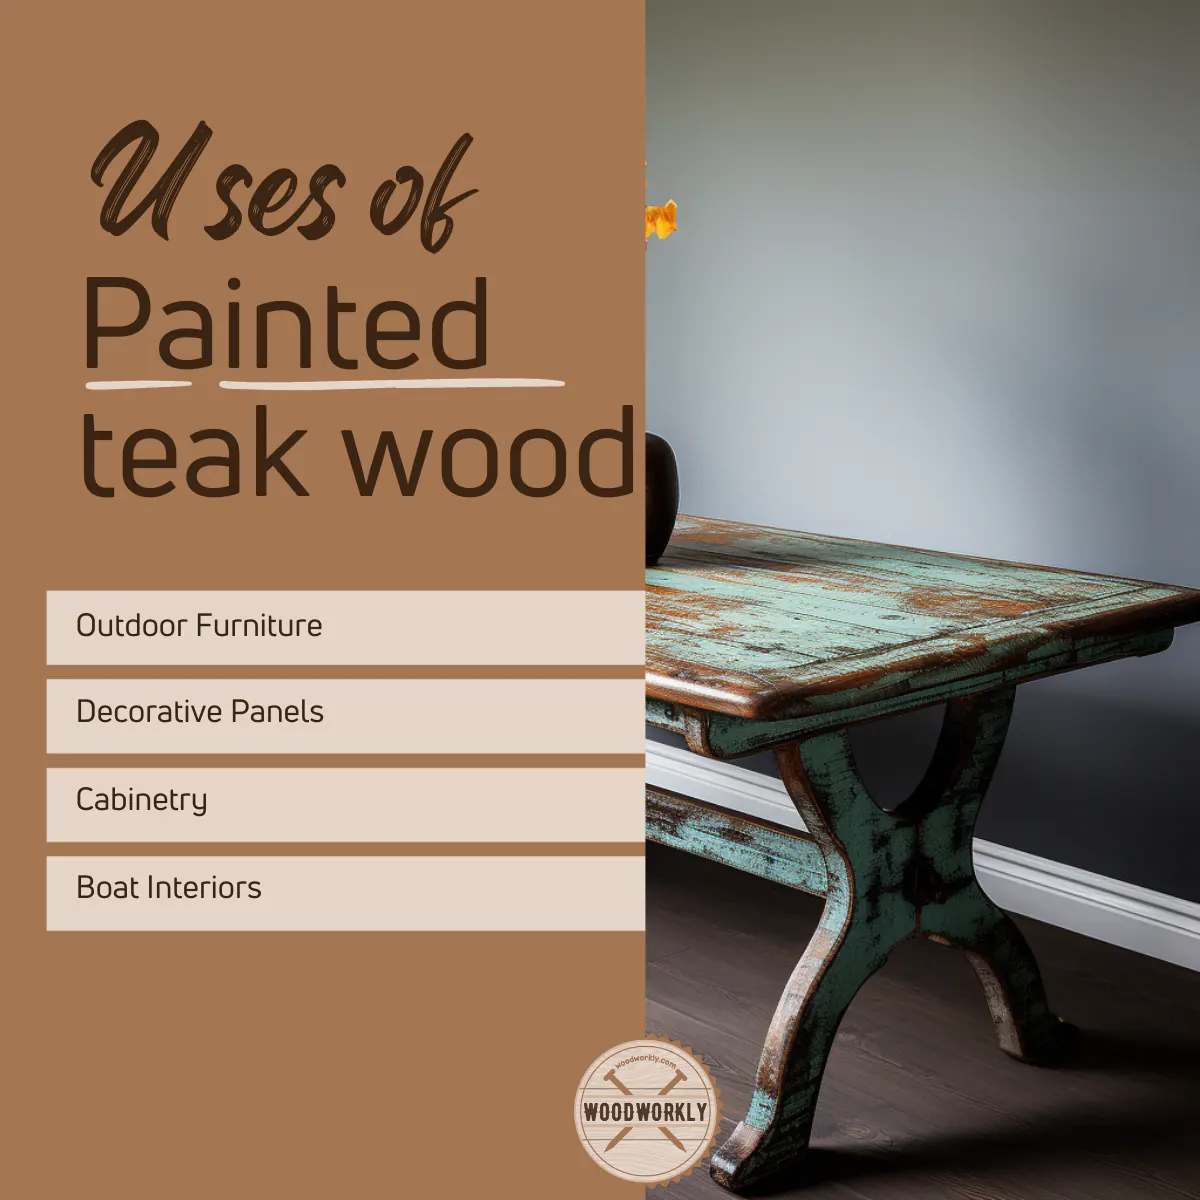 Uses of Painted teak wood